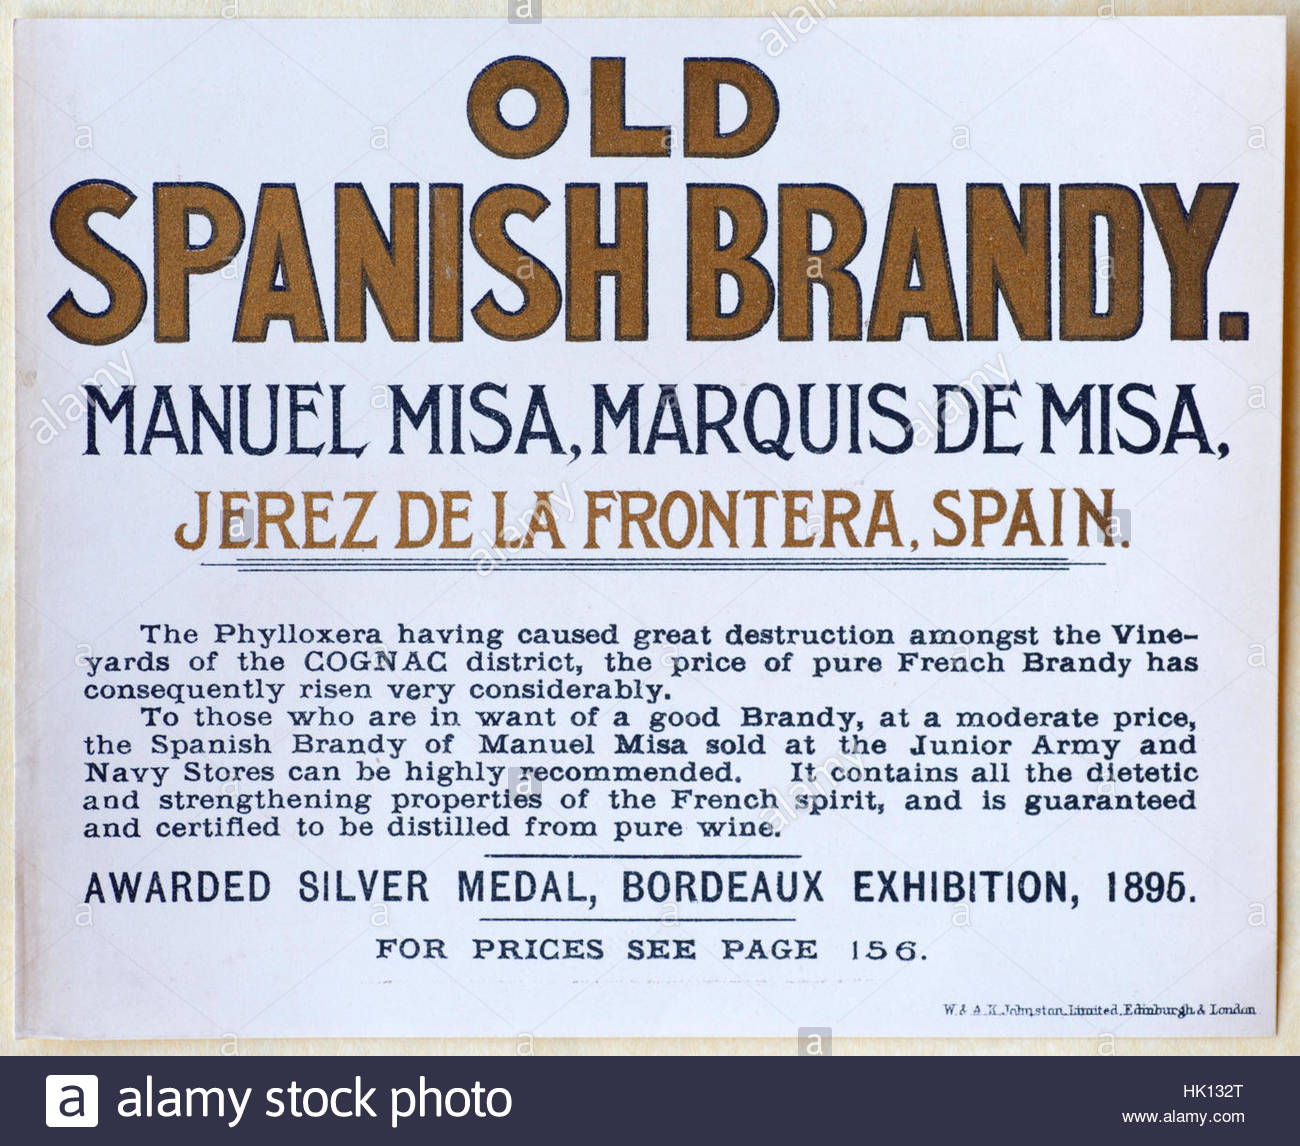 Vecchio brandy spagnoli, originale pubblicità d'epoca circa dal 1900 Foto Stock